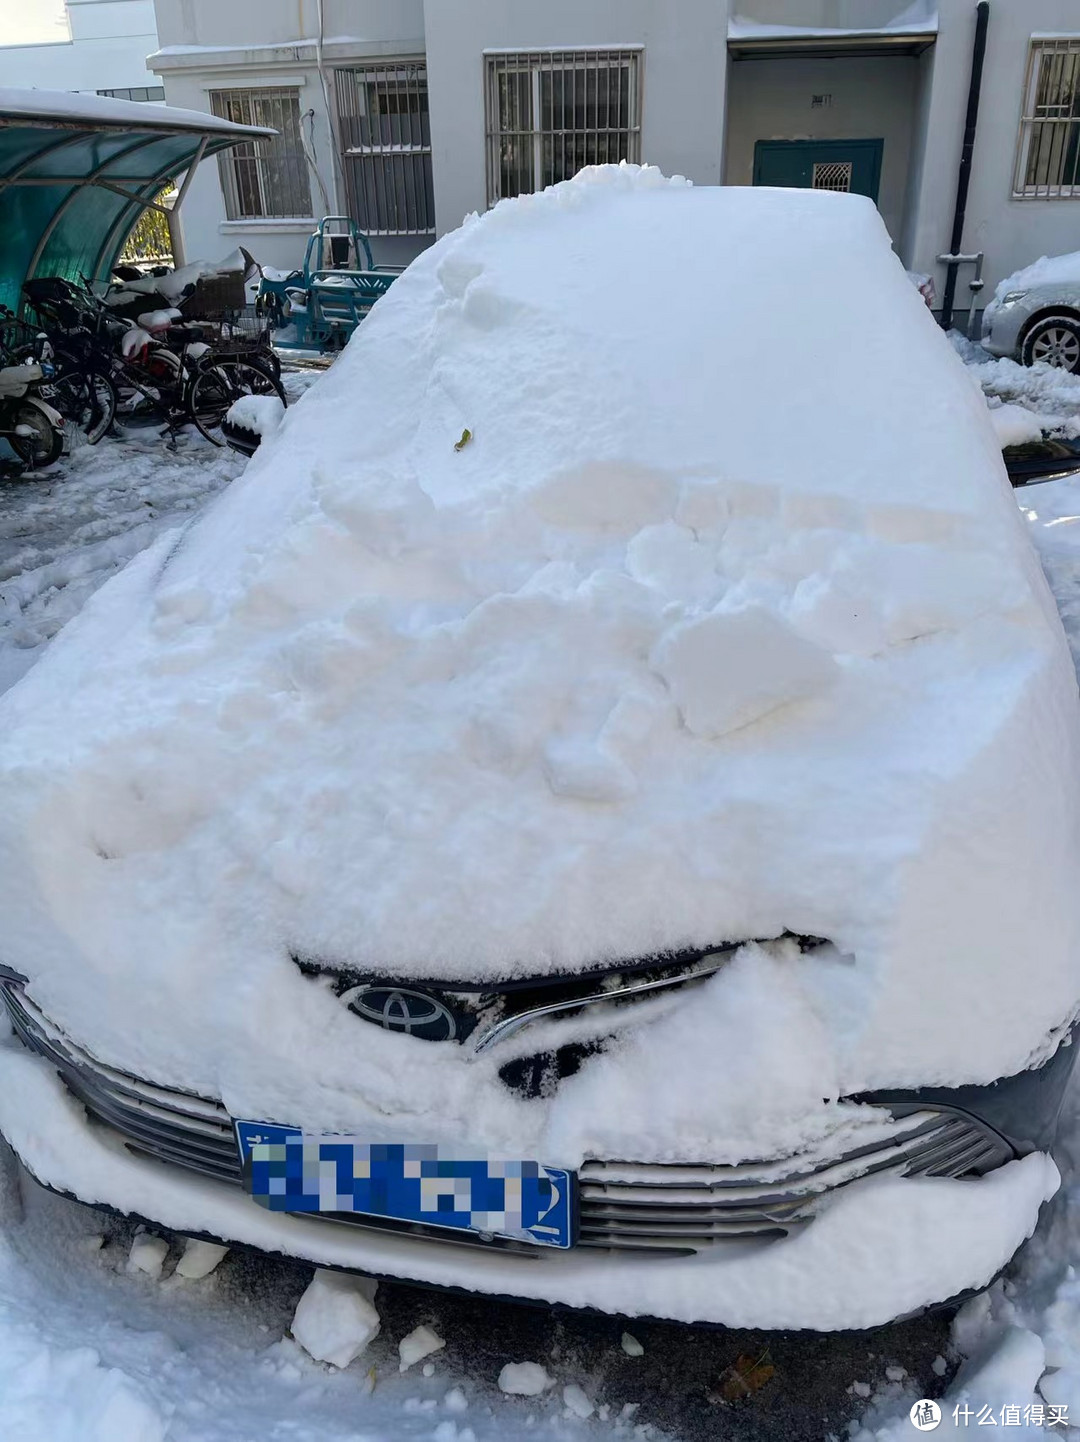 任性的雪，隐忍的车